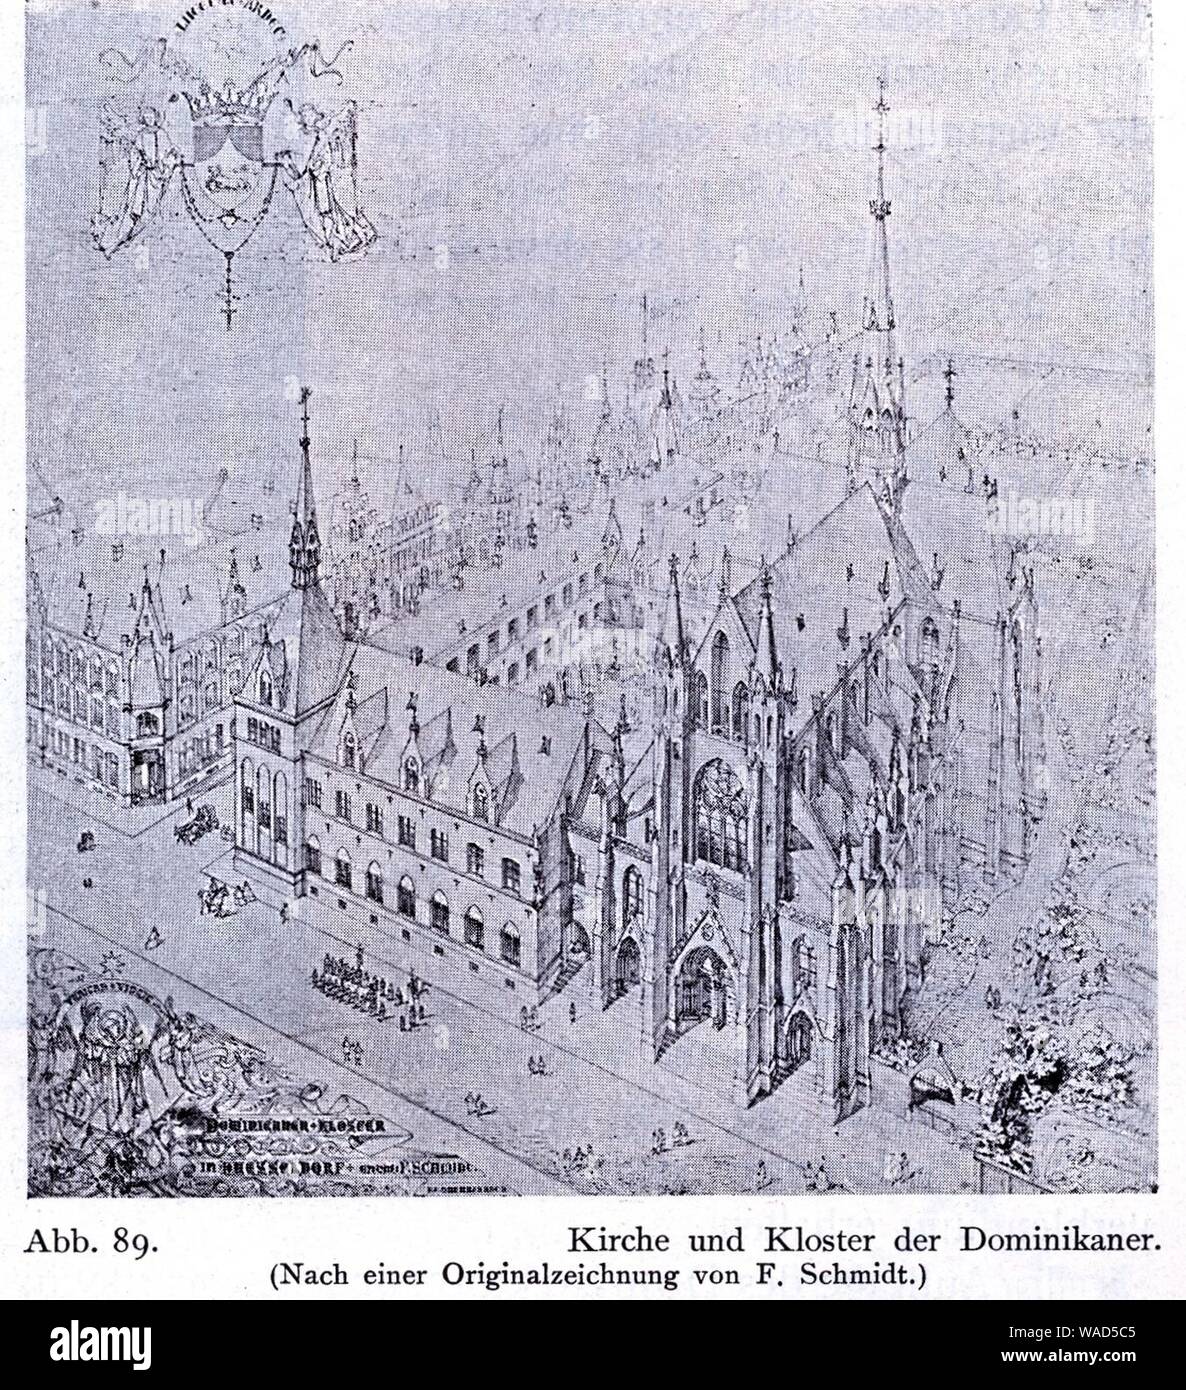 Dominikanerkloster an der Herzogstraße in Düsseldorf, 1867 bis 1887, Dombaumeister Friedrich von Schmidt aus Wien, Zeichnung. Stock Photo